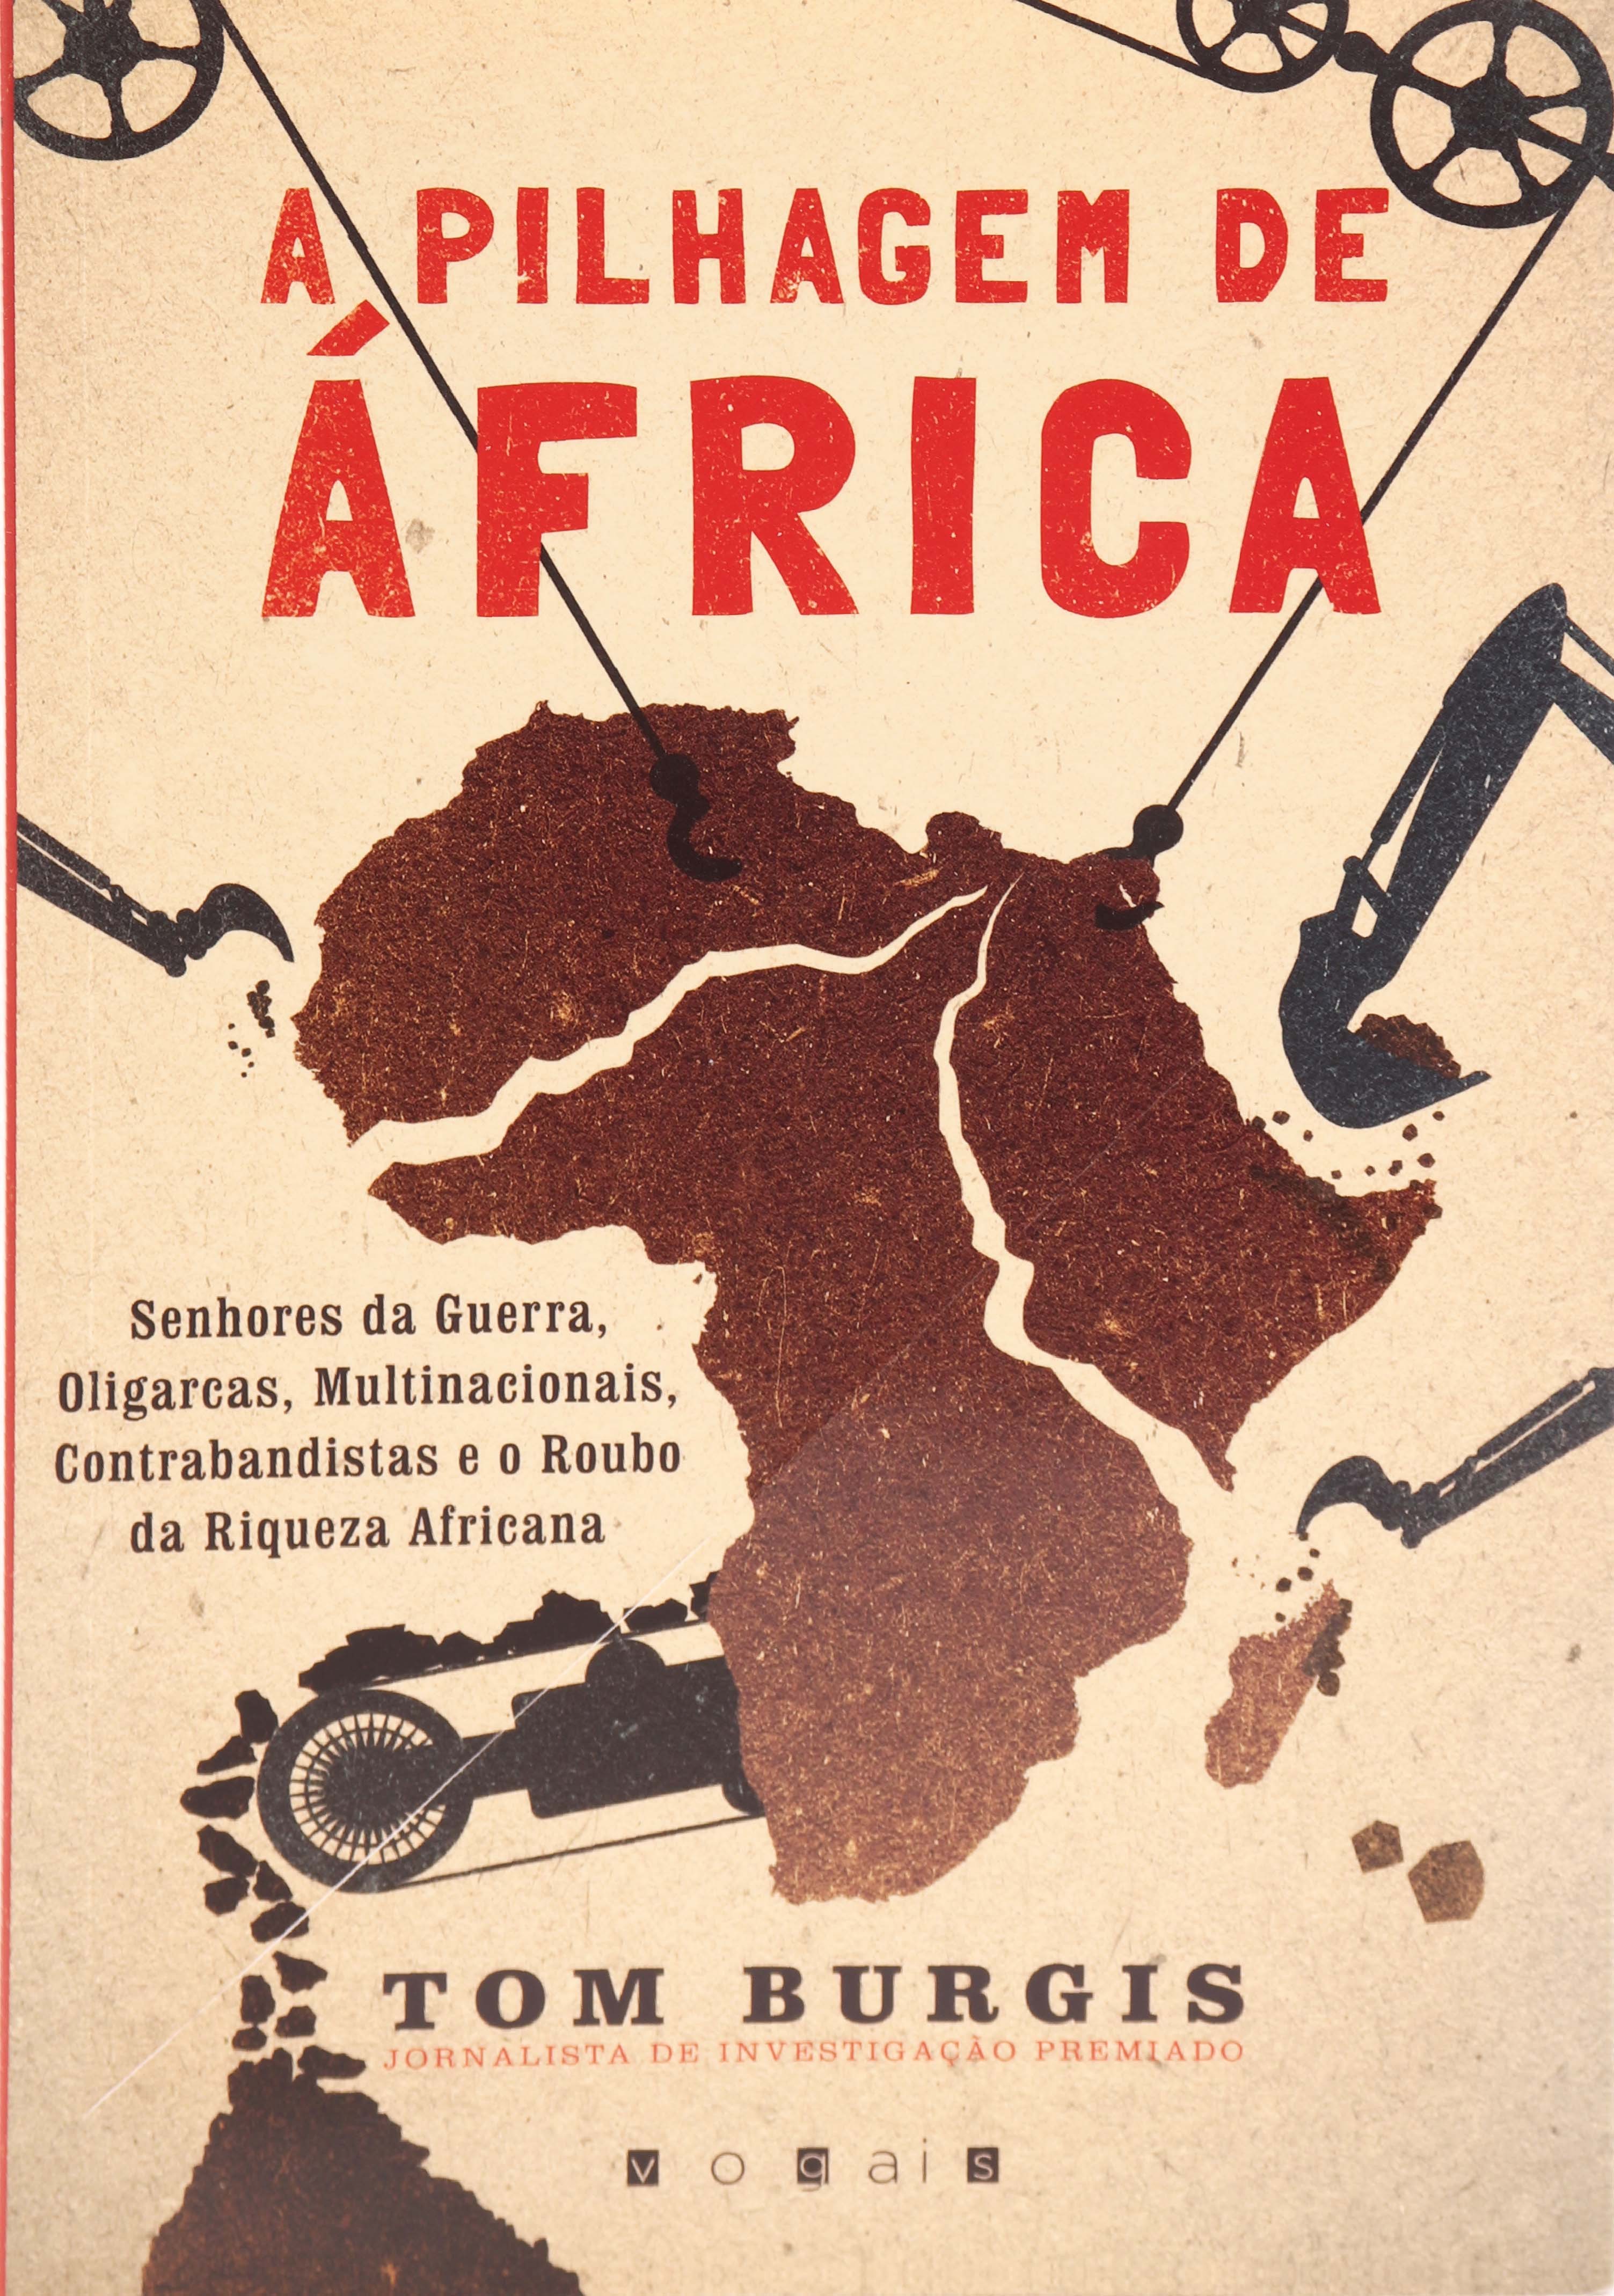 A PILHAGEM DE ÁFRICA